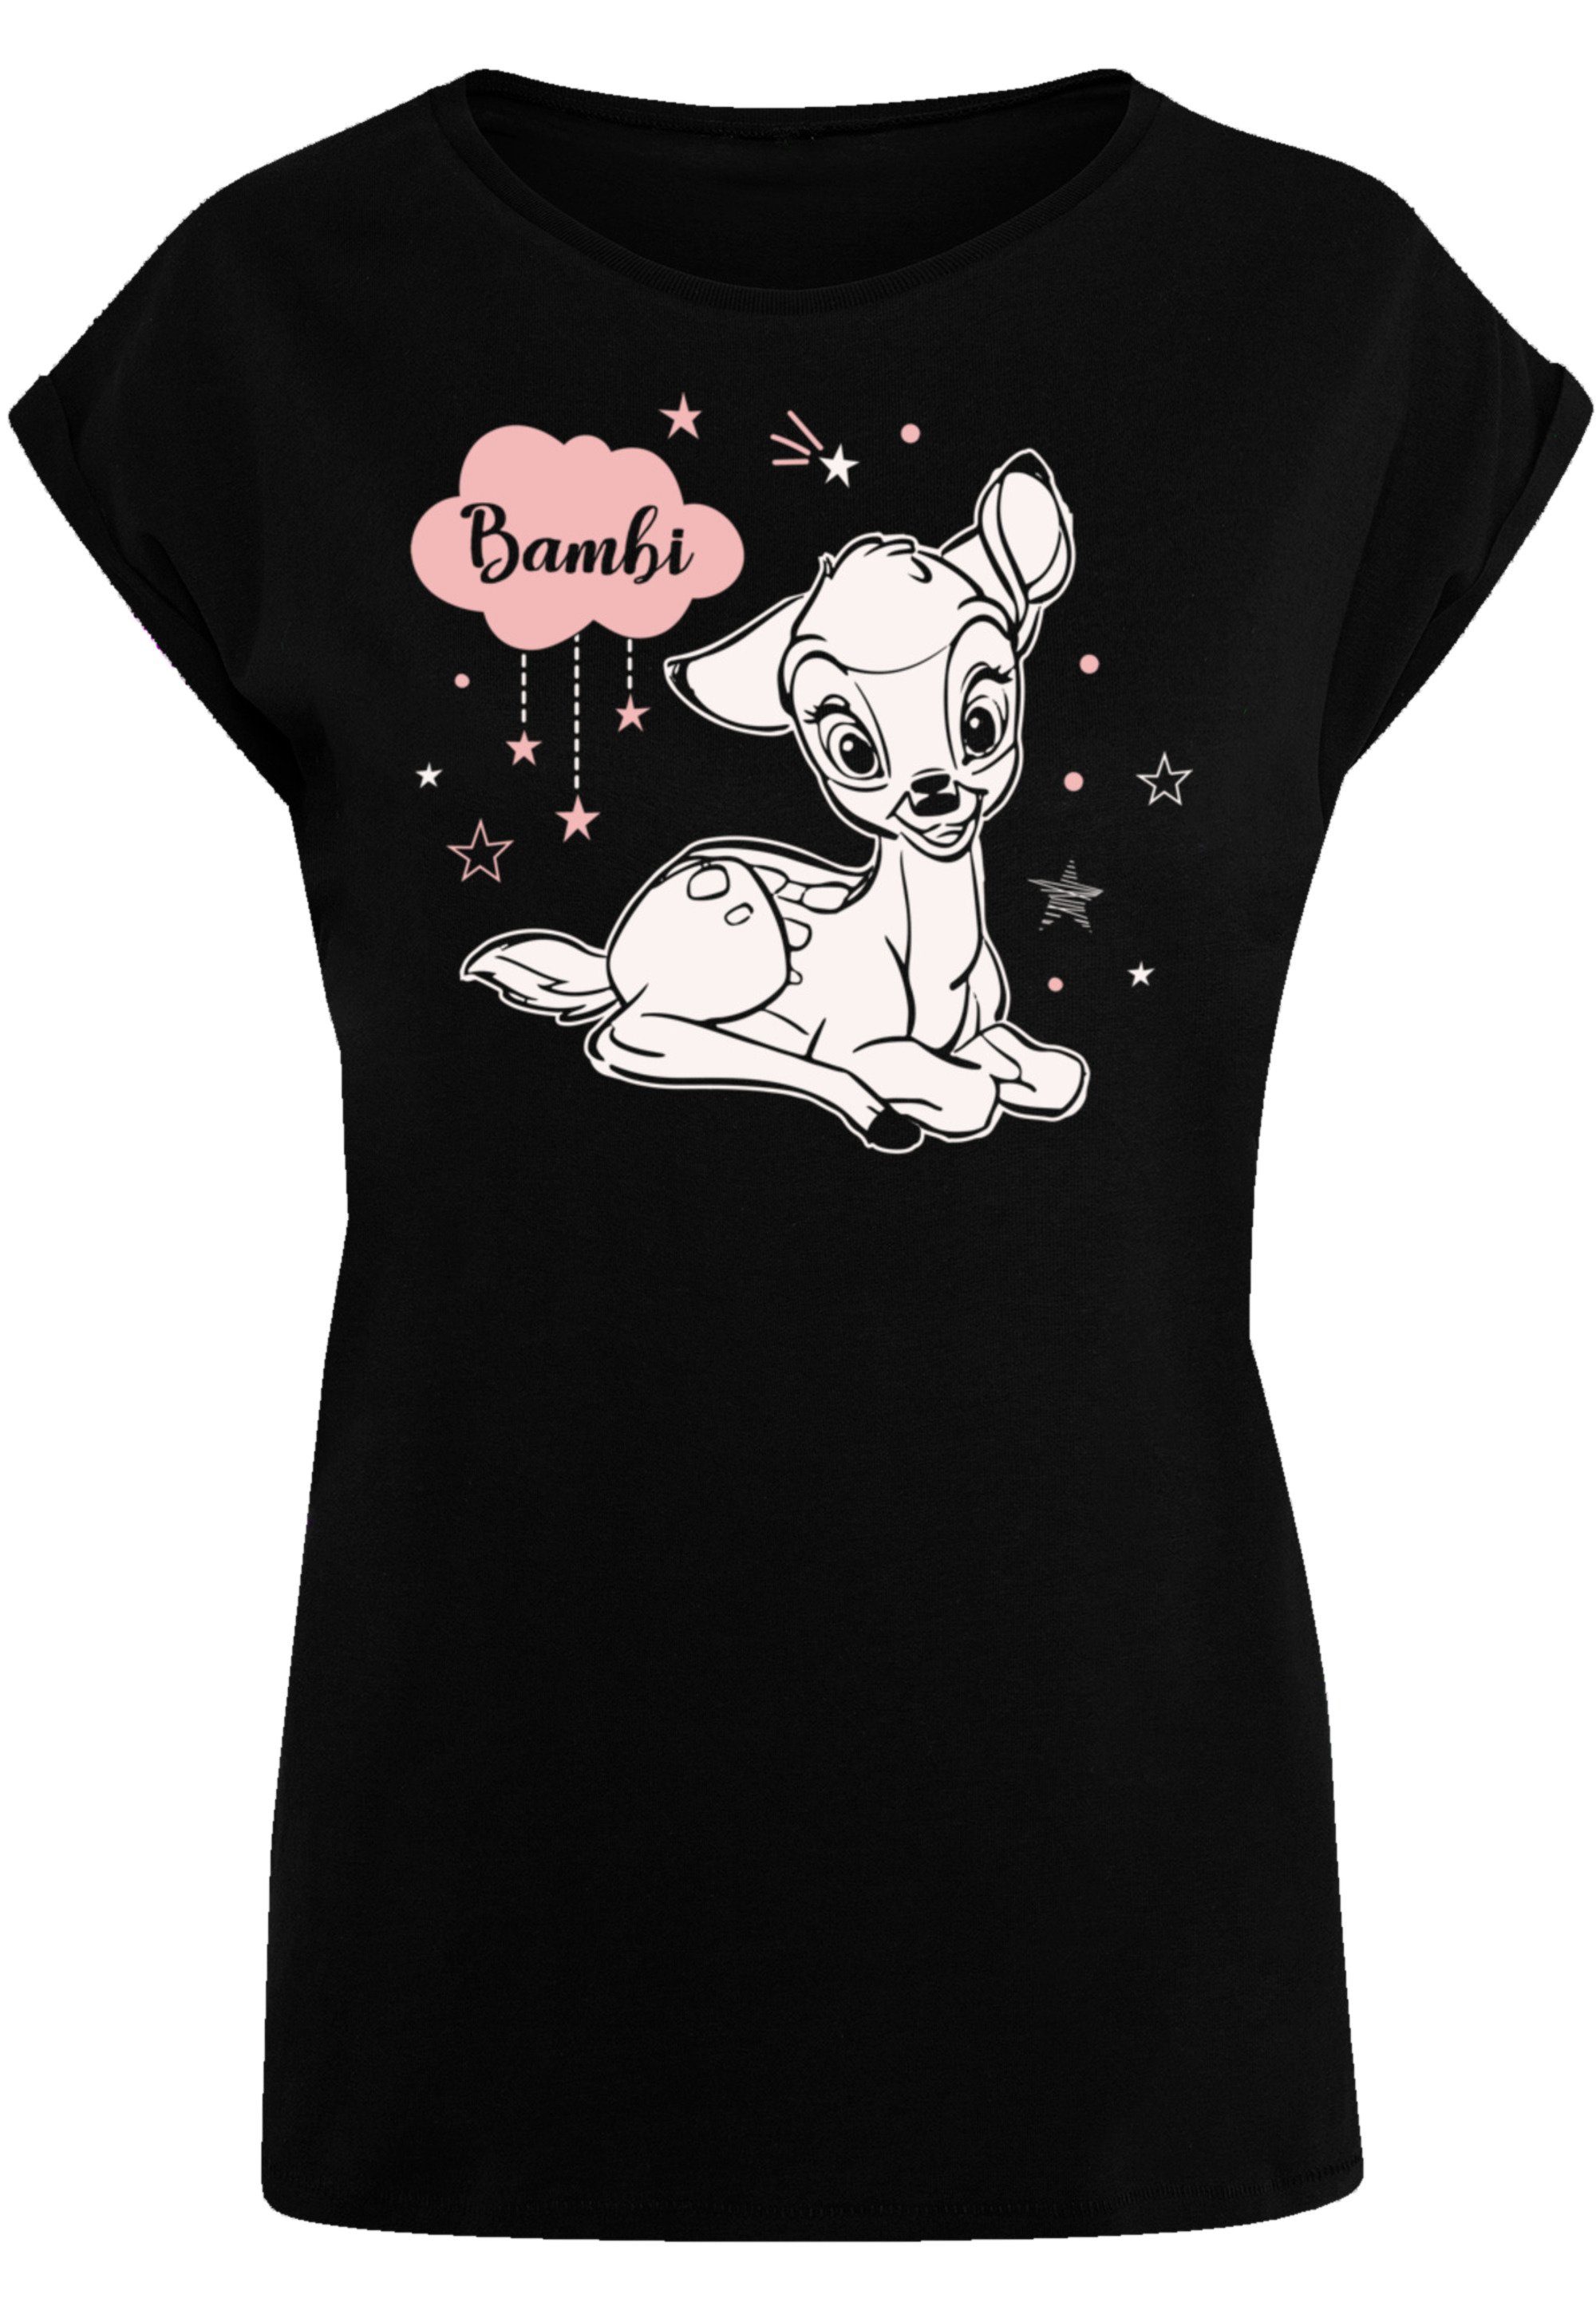 Premium Qualität, Bambi hohem T-Shirt Wolke Tragekomfort Baumwollstoff Sehr mit Pinke Disney weicher F4NT4STIC